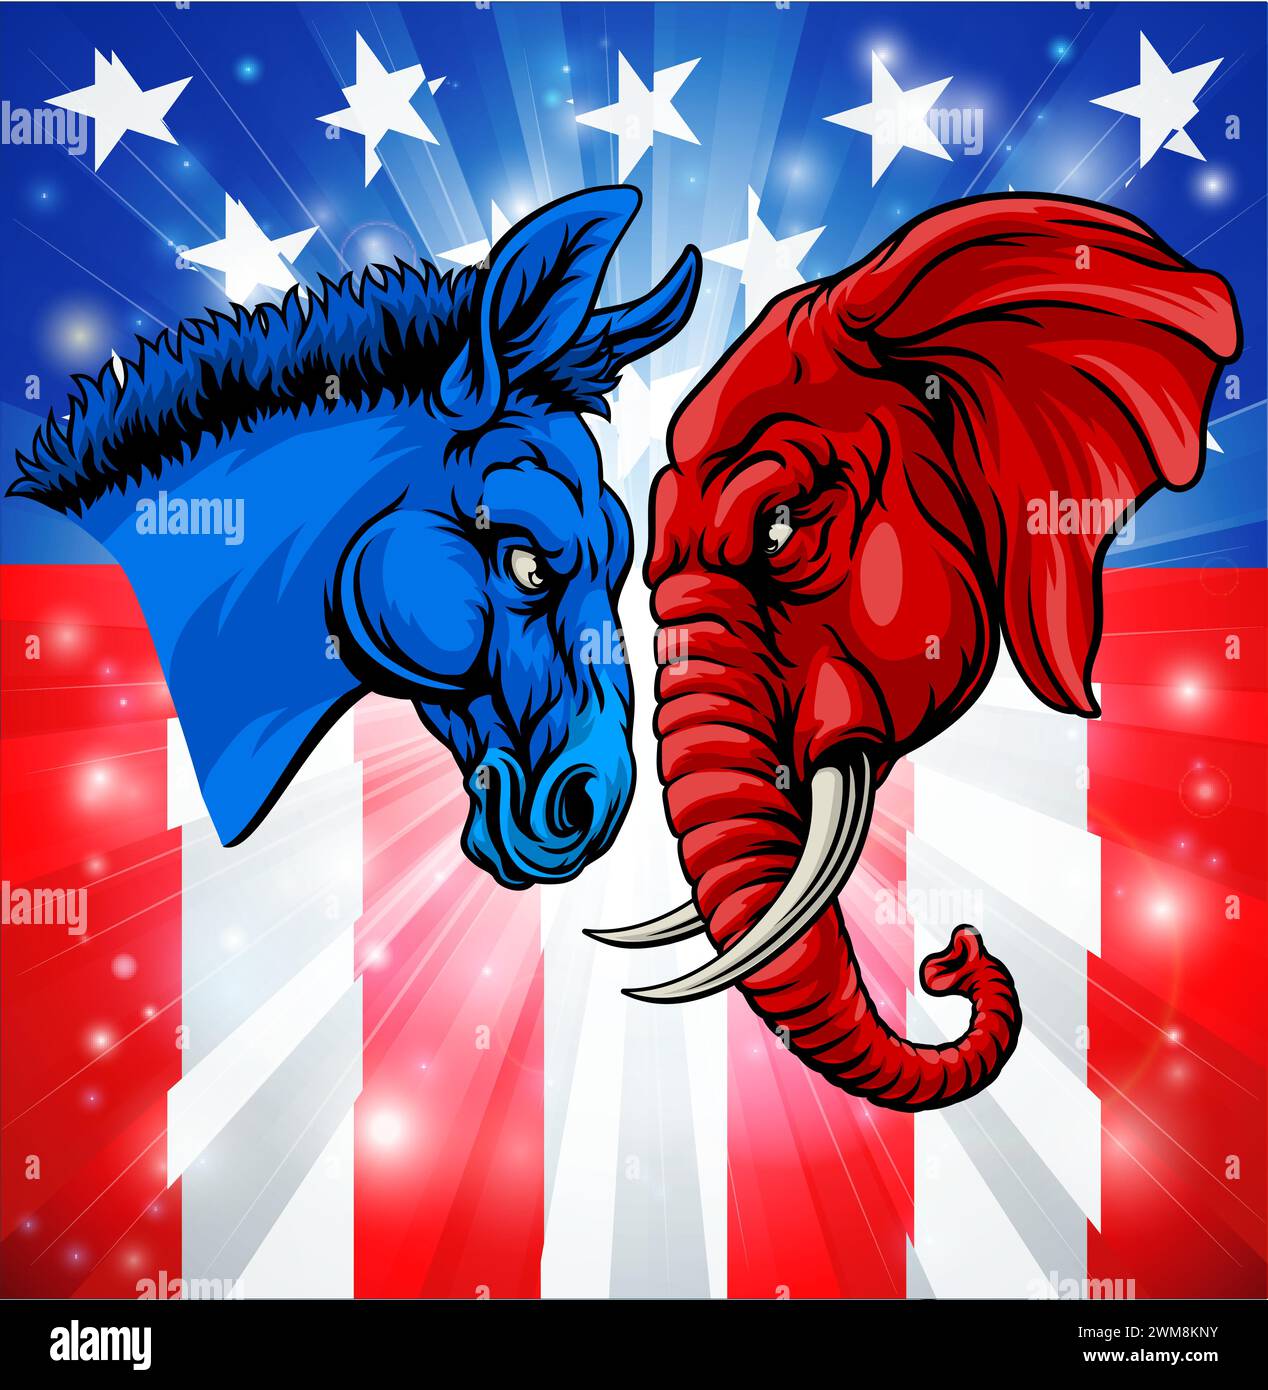 Parti électoral républicain démocrate politique Illustration de Vecteur